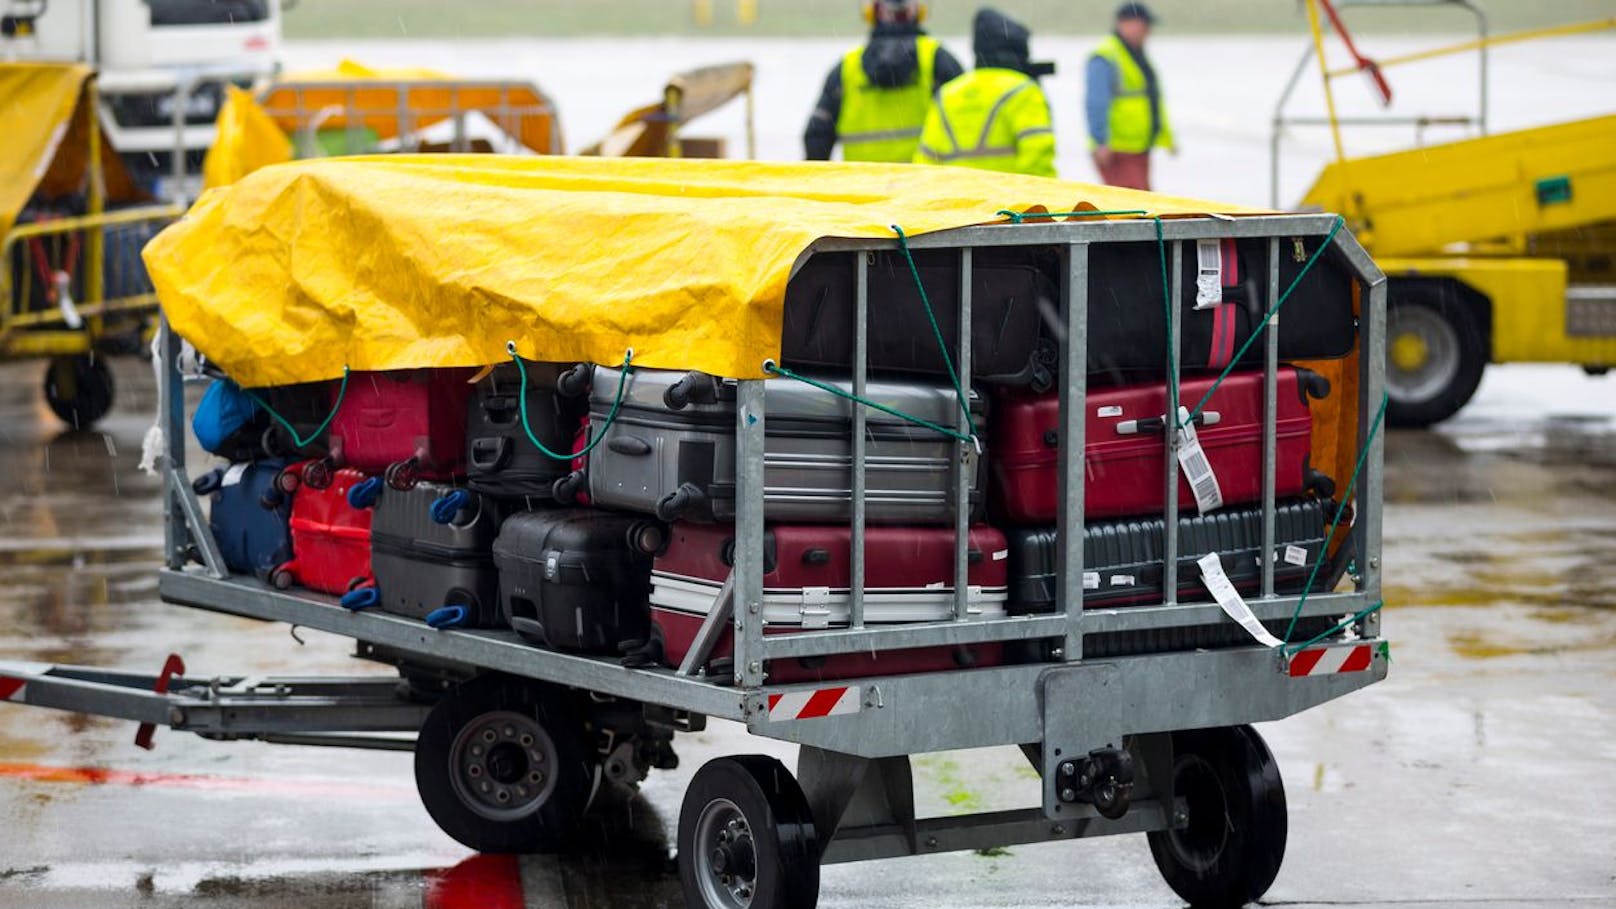 Airline verliert Koffer mit Luxuskleidung – zahlt nicht